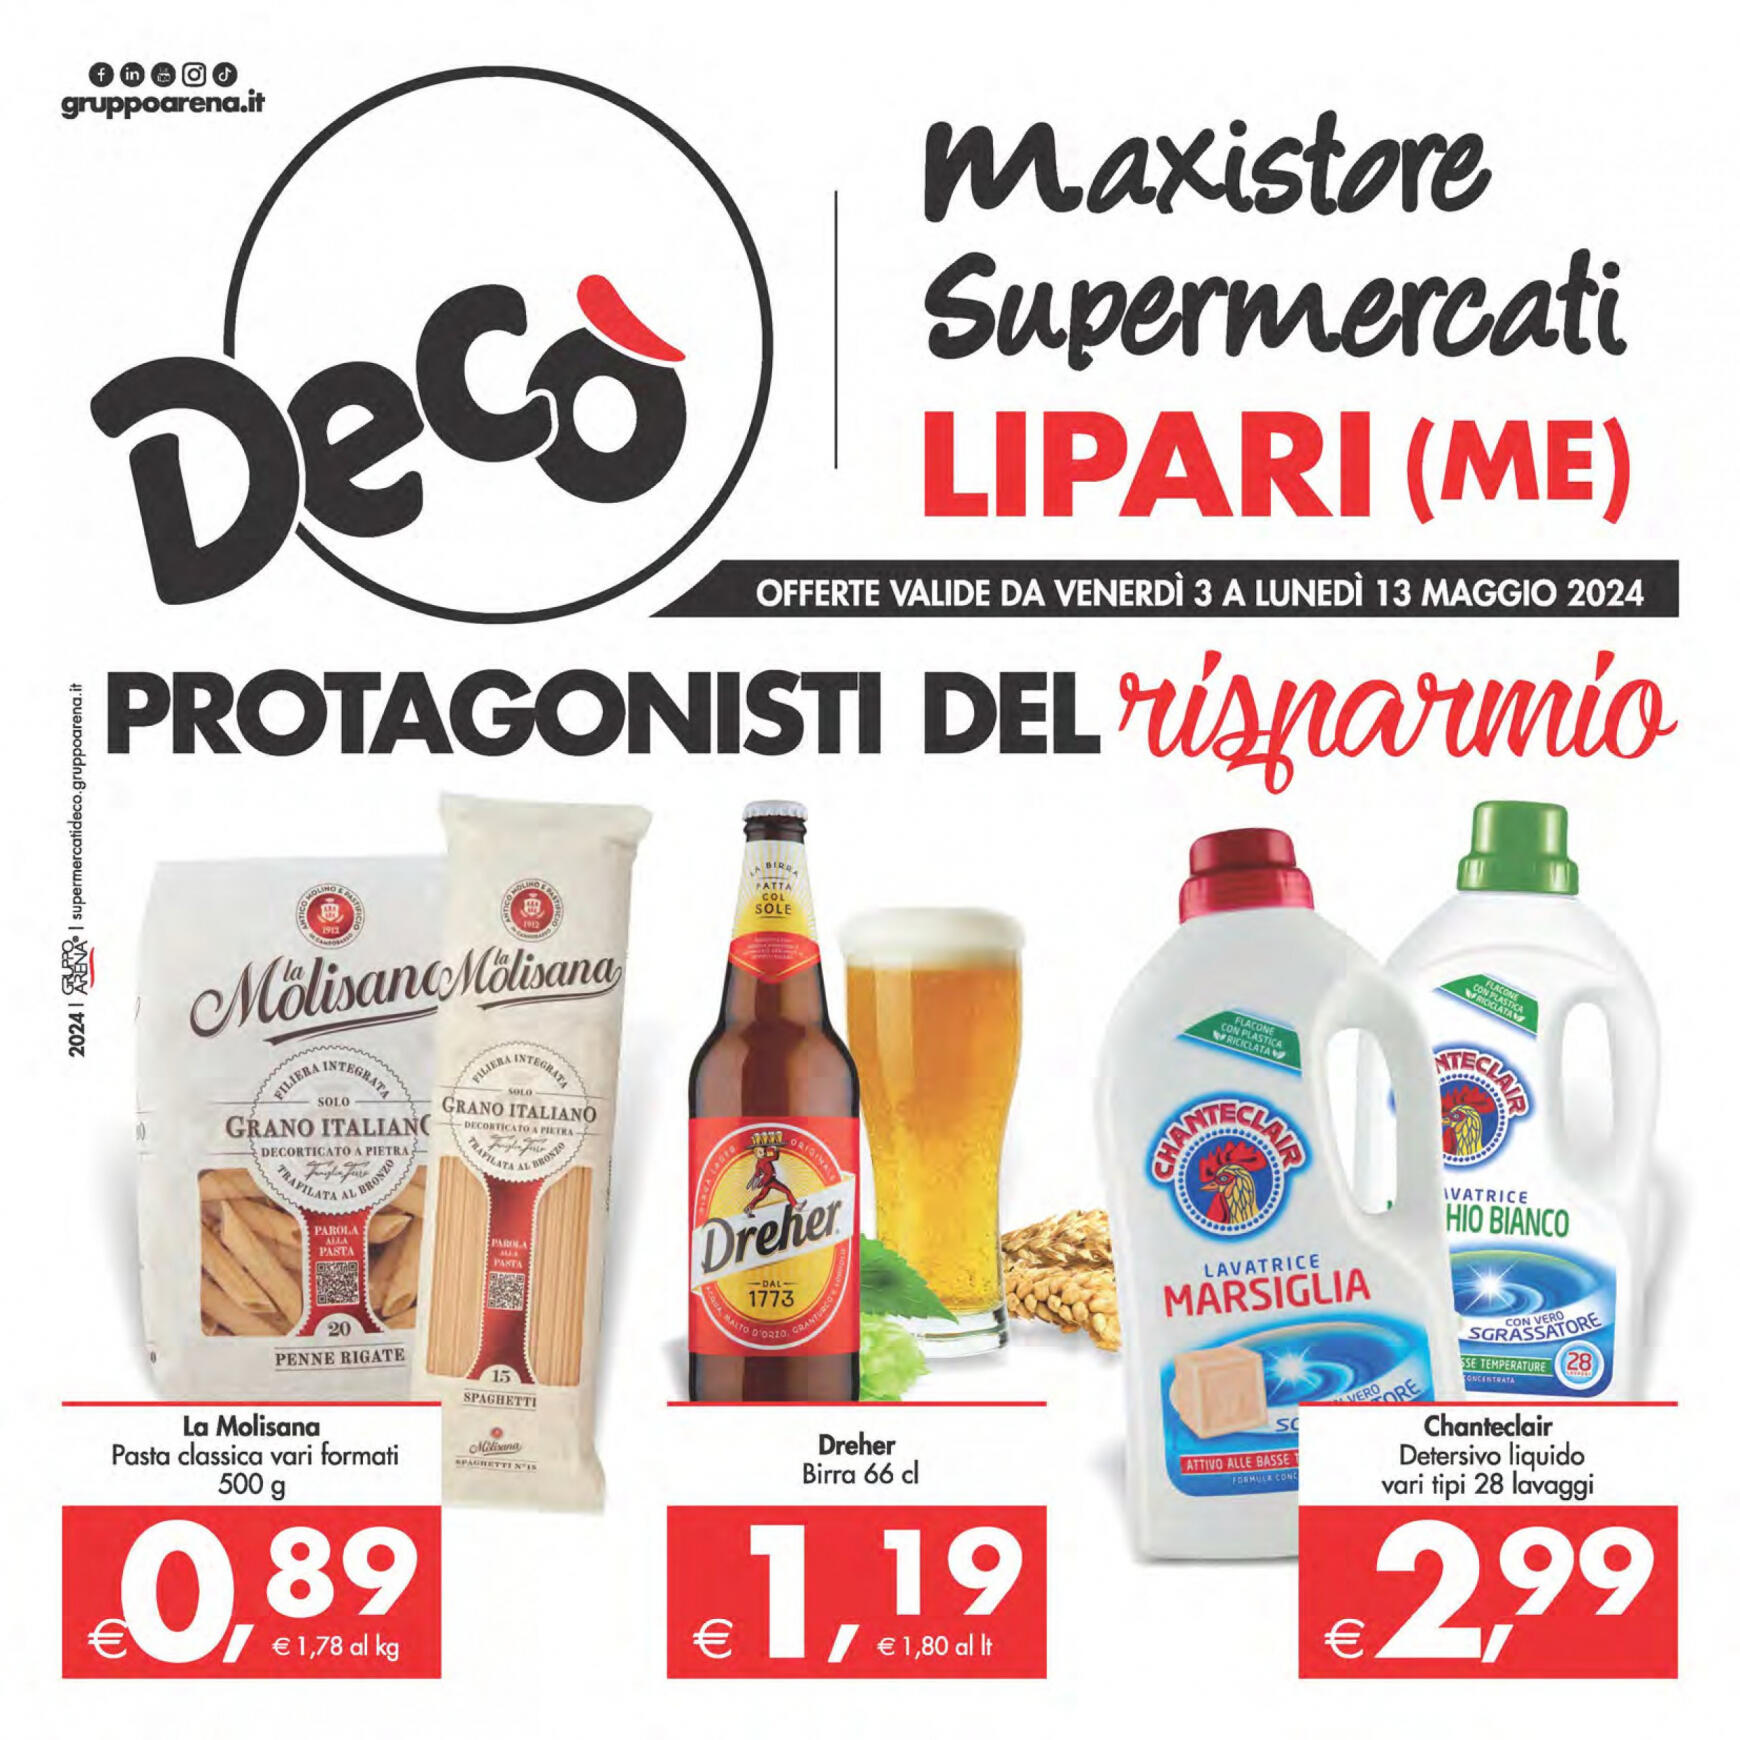 deco - Nuovo volantino Decò - Maxistore/Supermercati/Local Lipari 03.05. - 13.05.